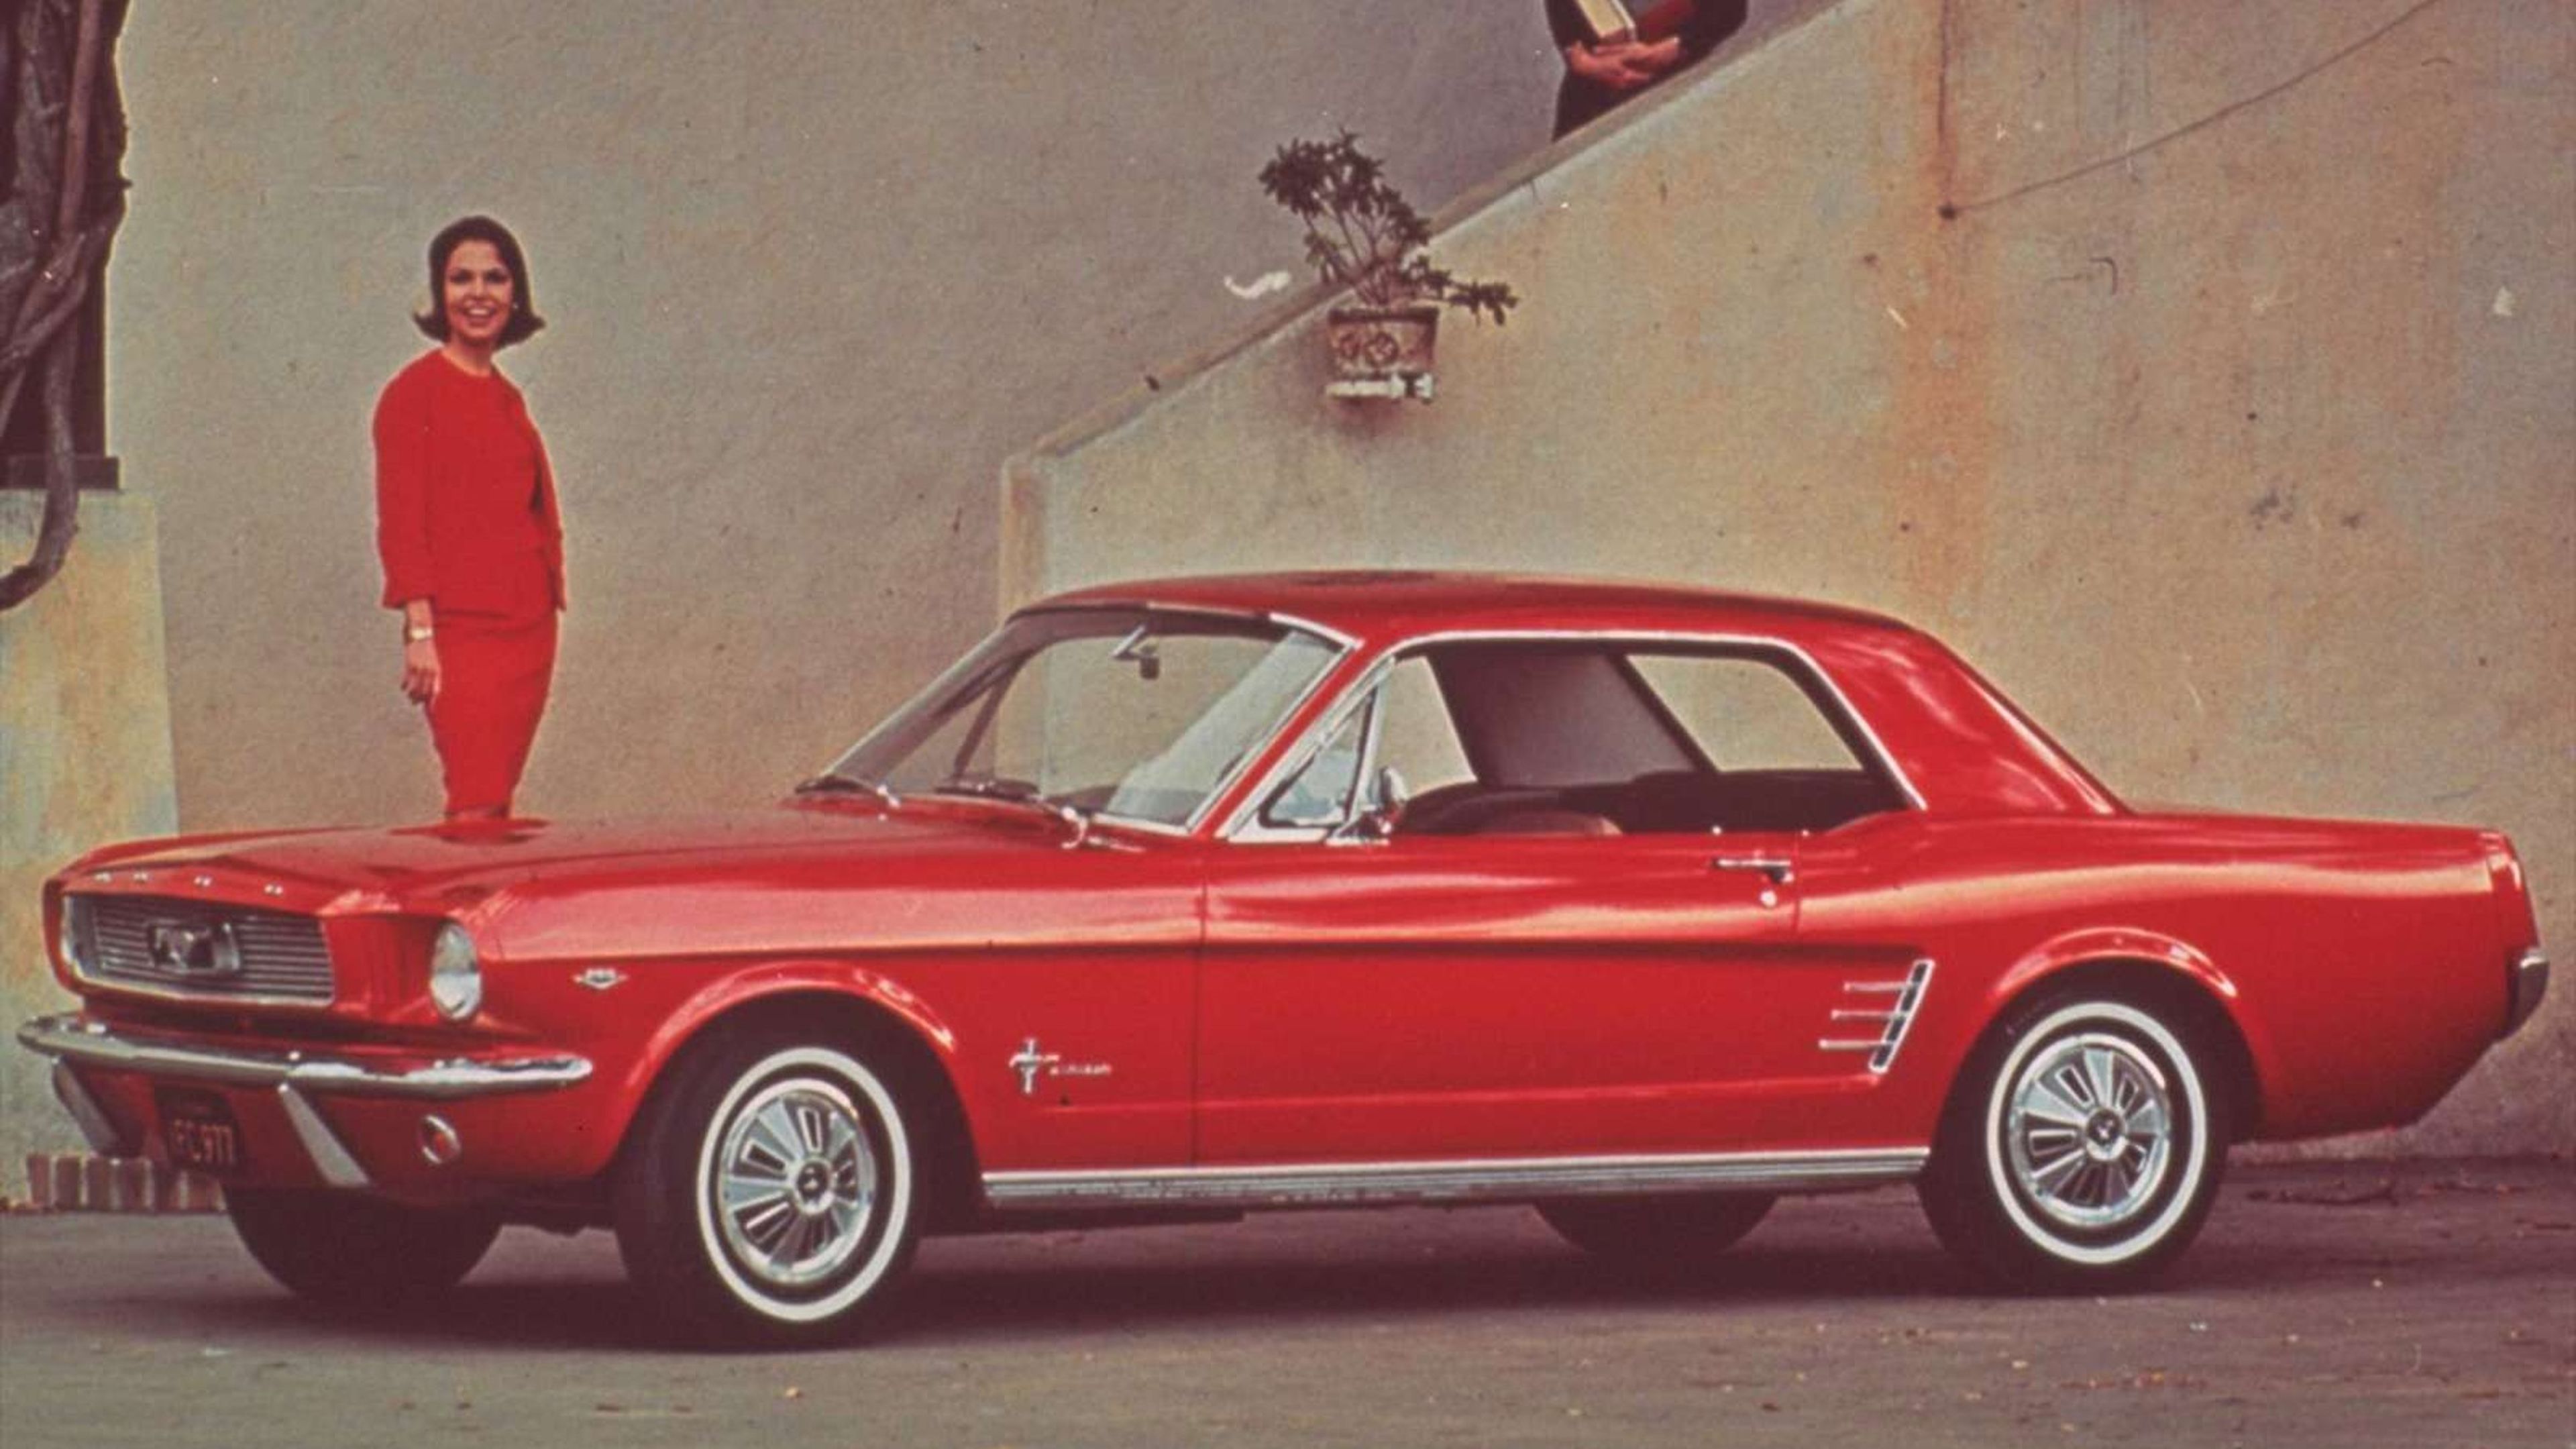 Historia del Ford Mustang 60 años